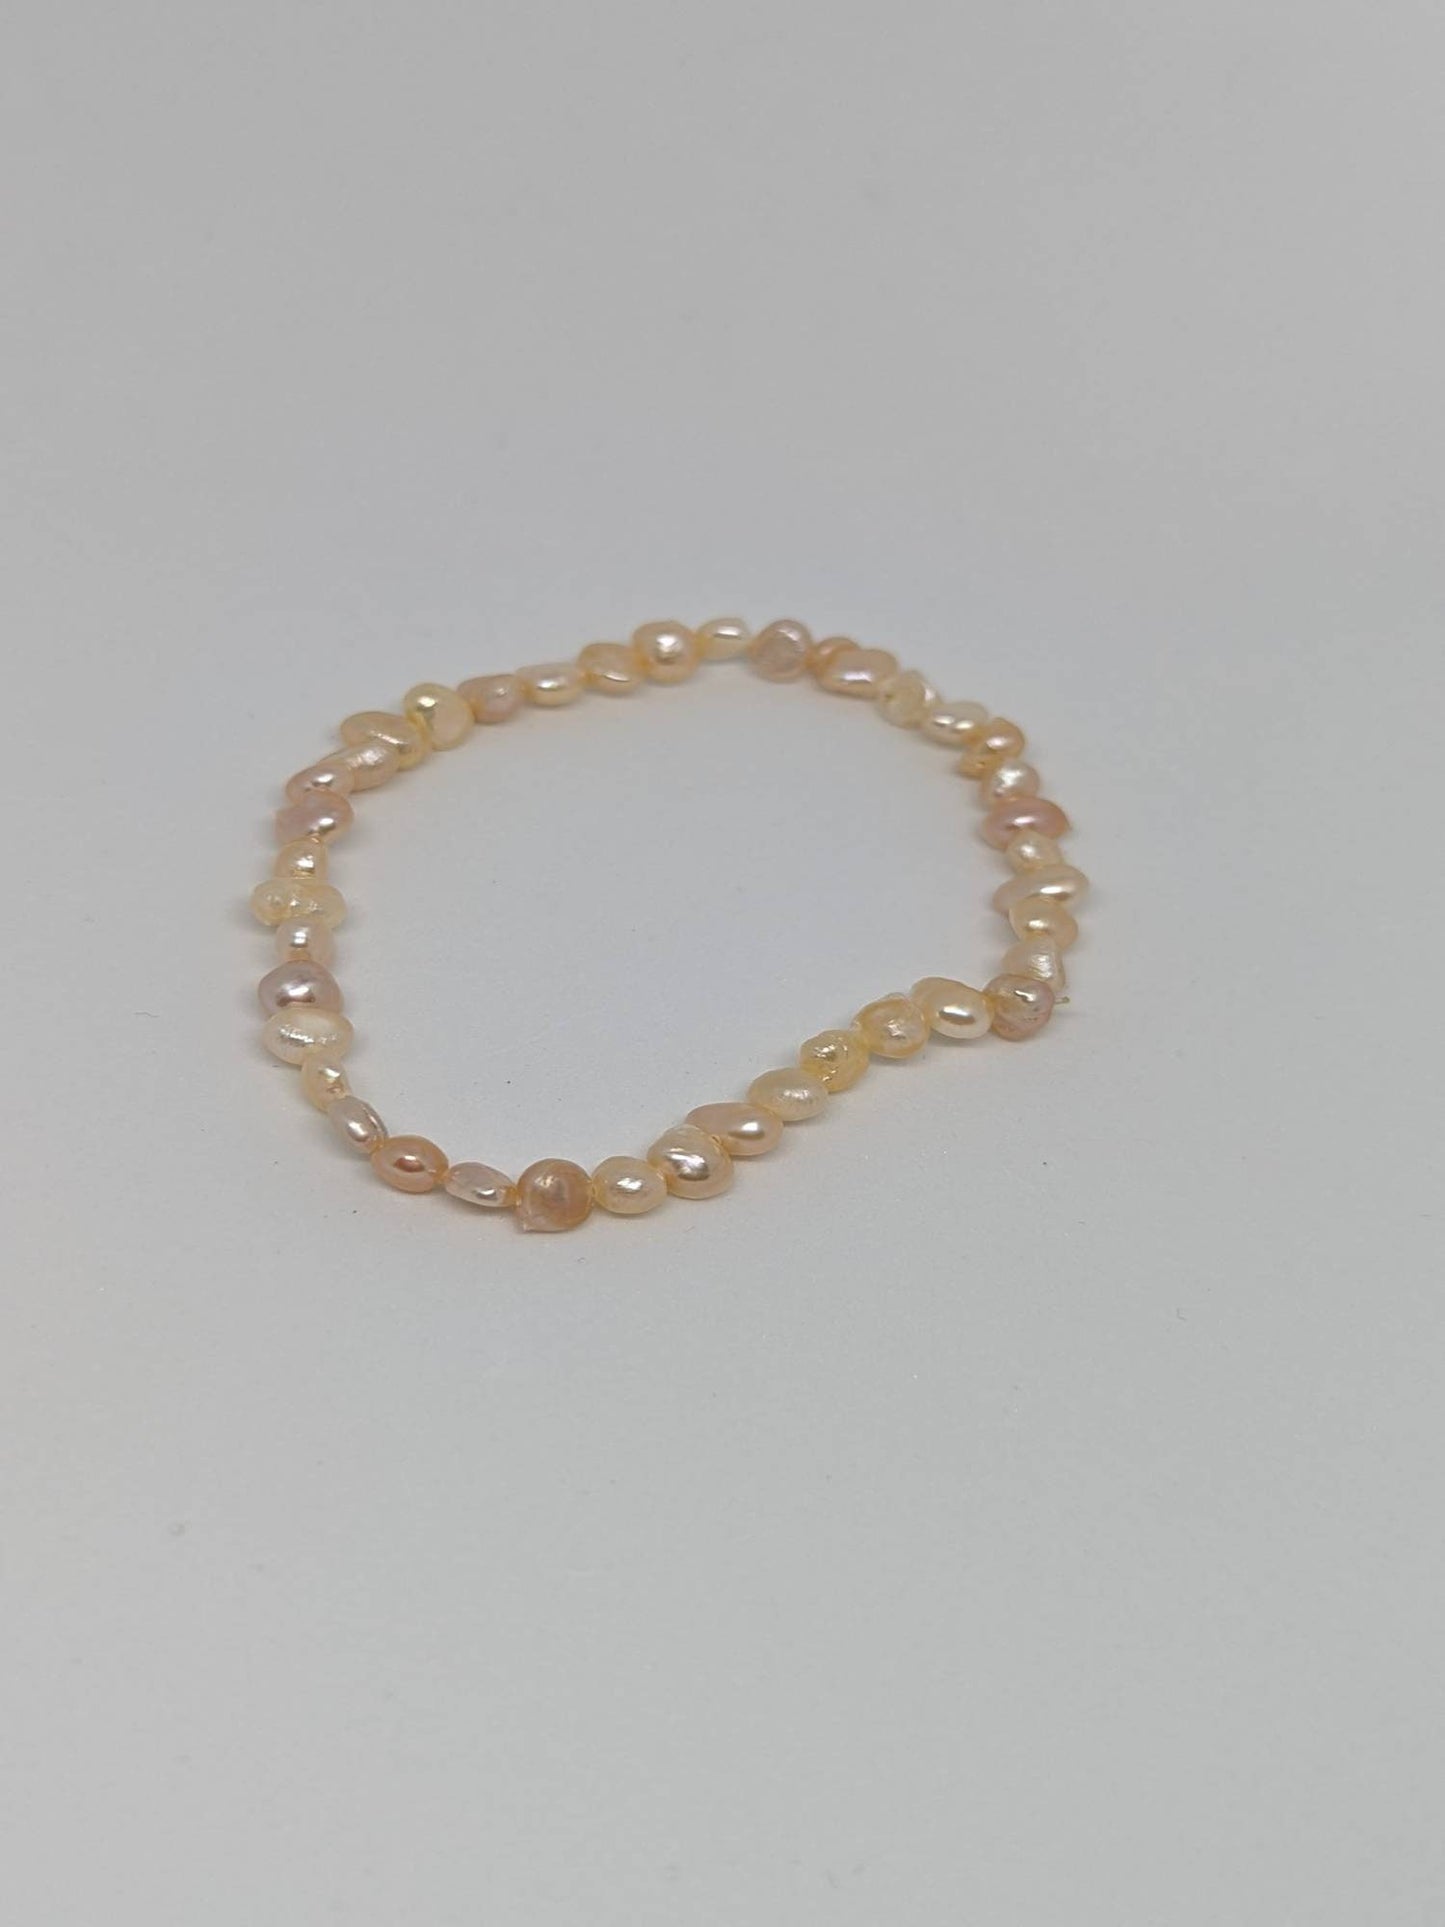 peach earrings, peach pearls, freshwater pearls, June Birthstone, wedding gift